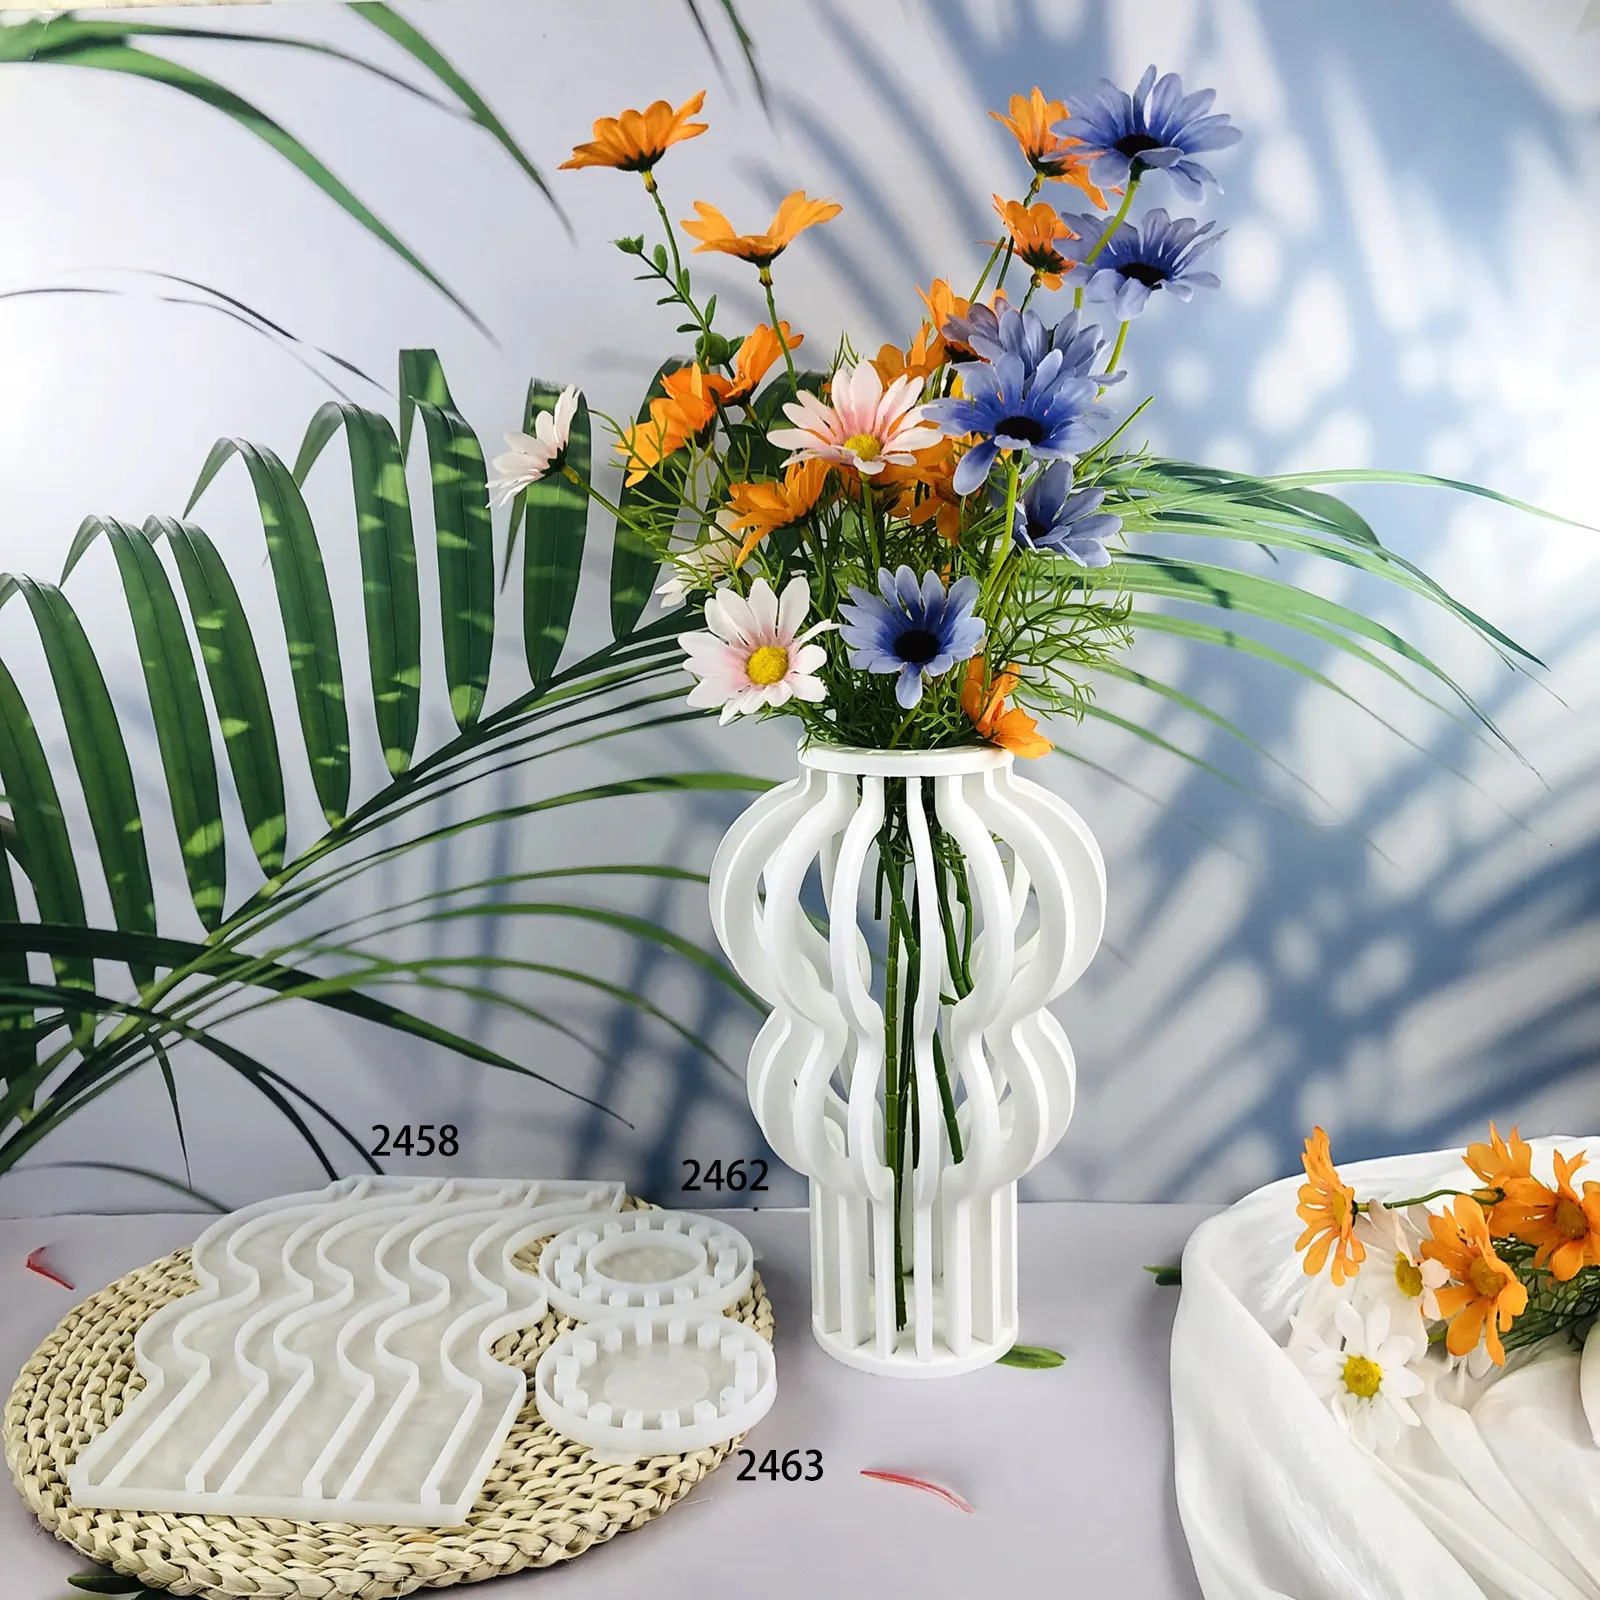 Molde de silicone para vasos de flores, recipiente de gesso para concreto e cimento, ideal para artesanato DIY, ideal para decoração de flores, 2458